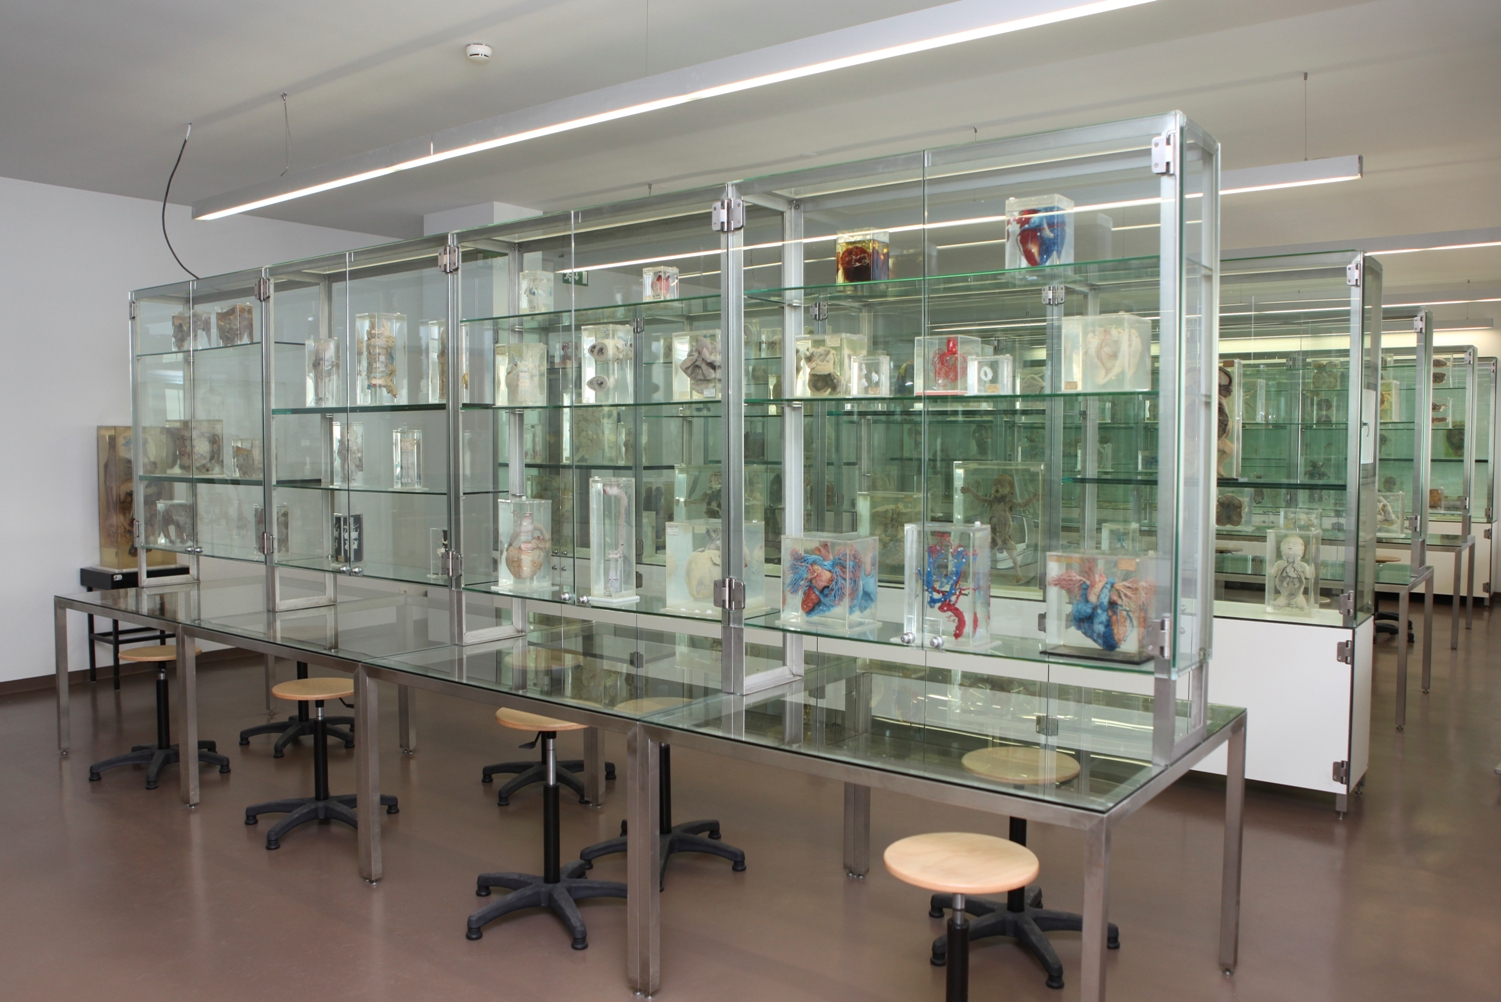 Museu de Anatomia Prof. Nuno Grande do ICBAS - Museus e Centros Temáticos